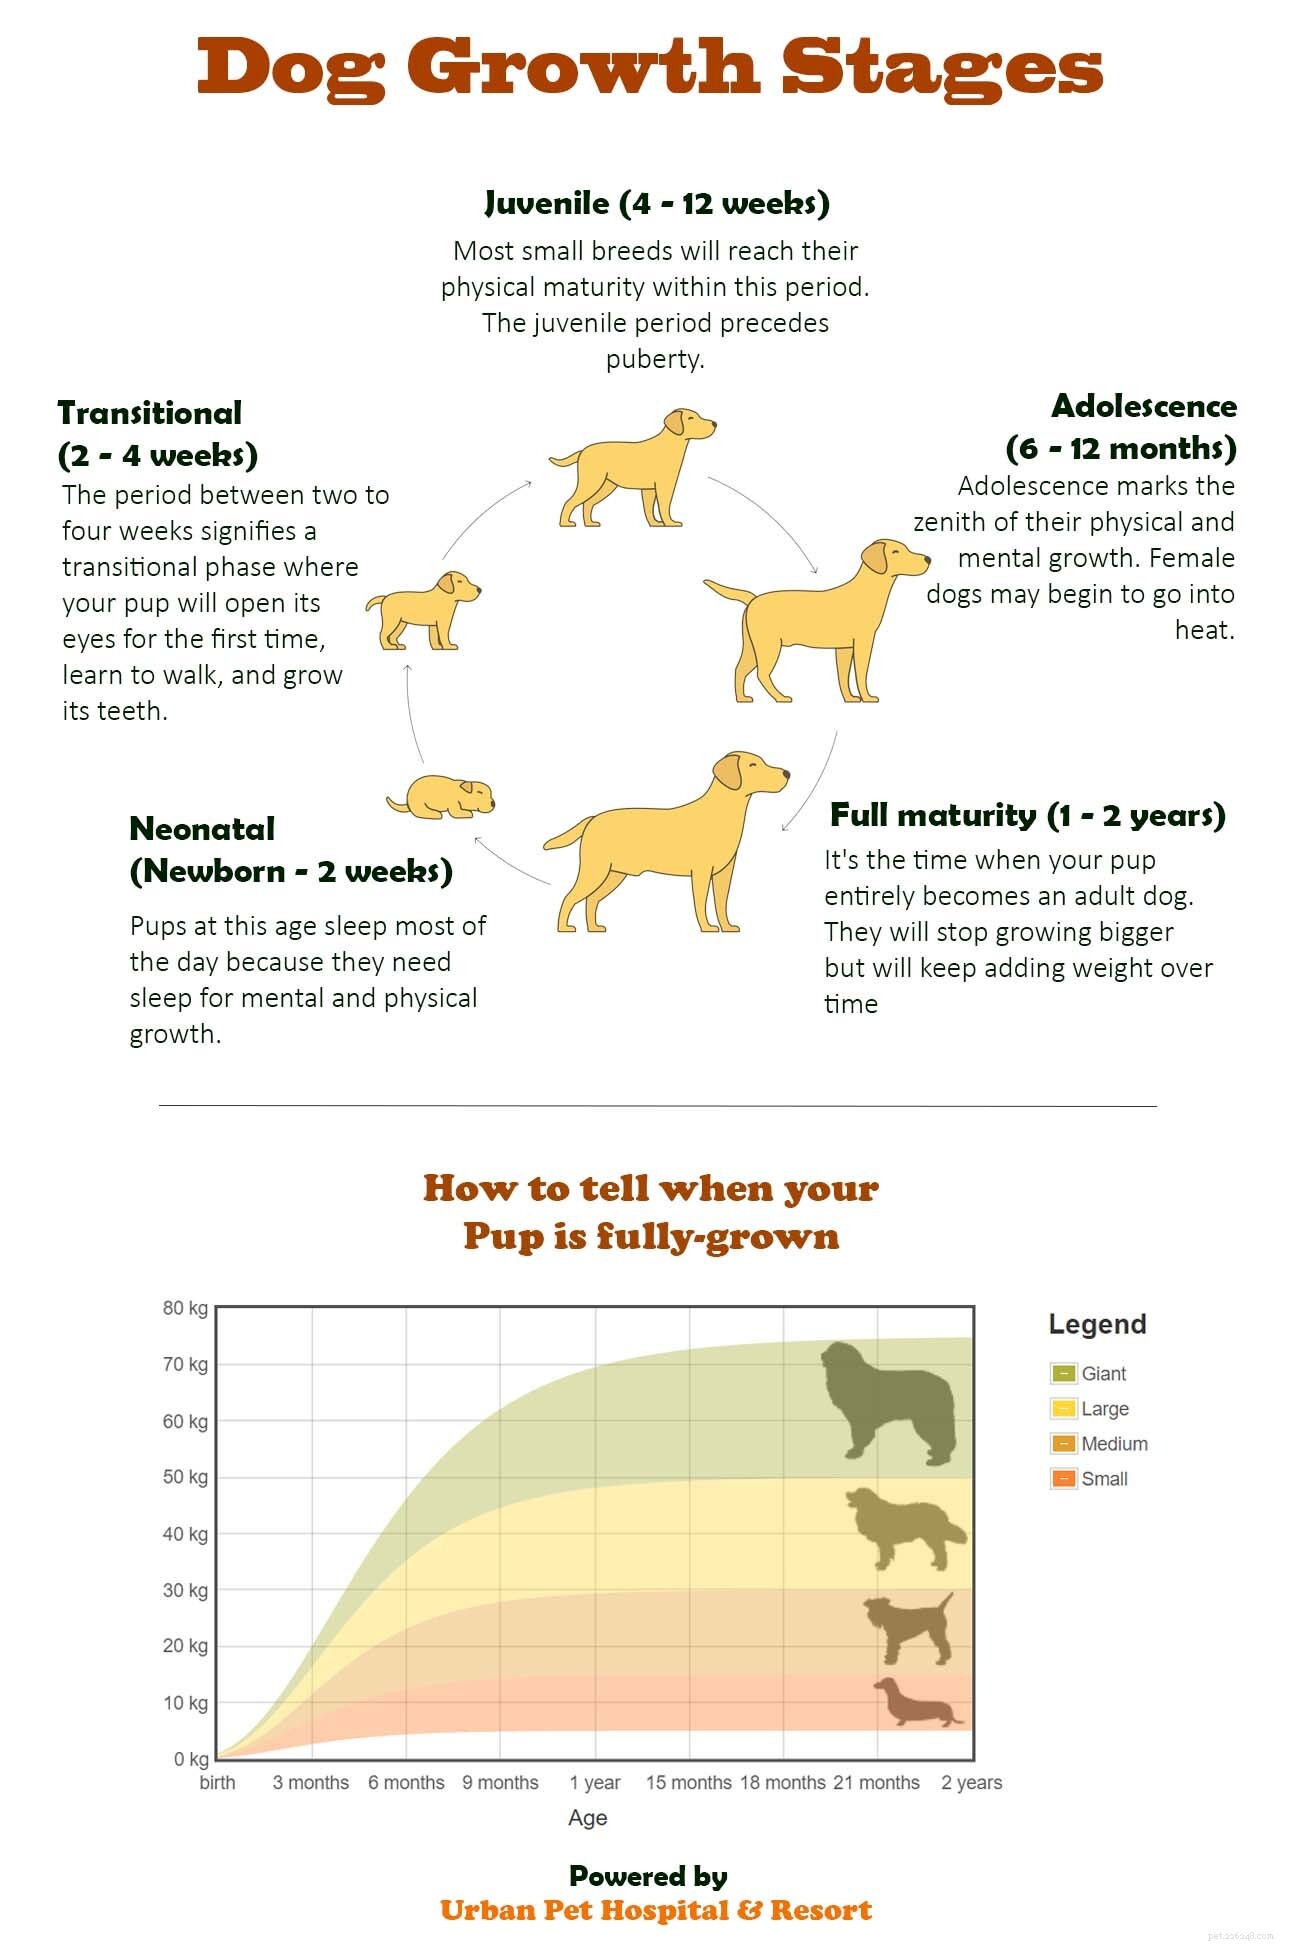 개는 몇 살에 성장을 멈추나요?